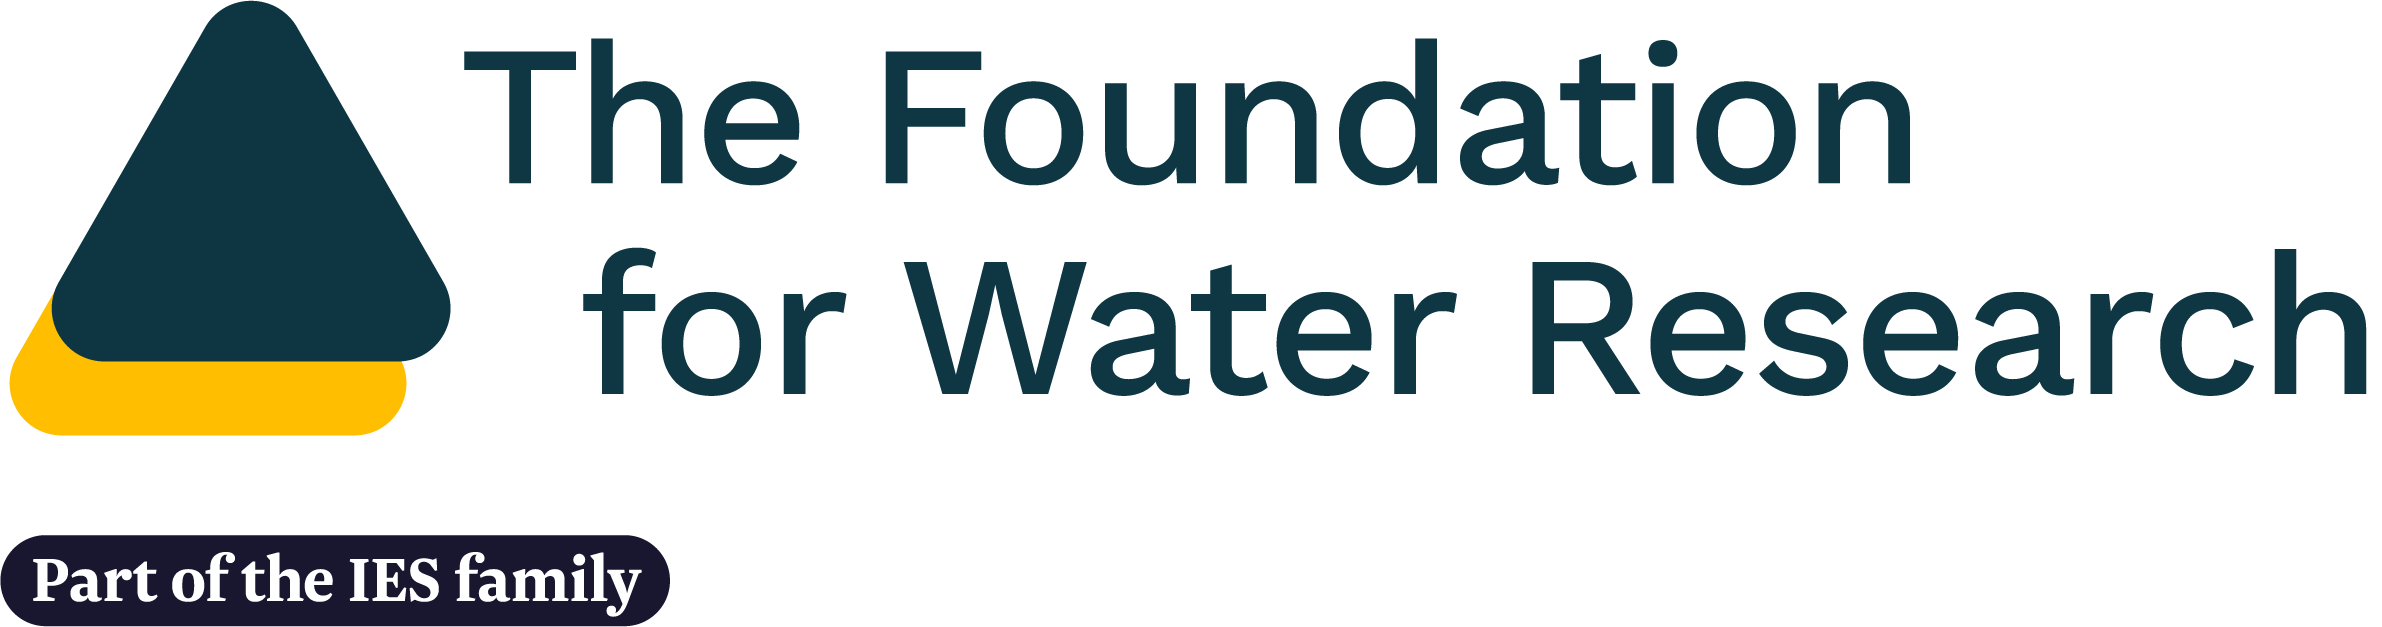 FWR logo